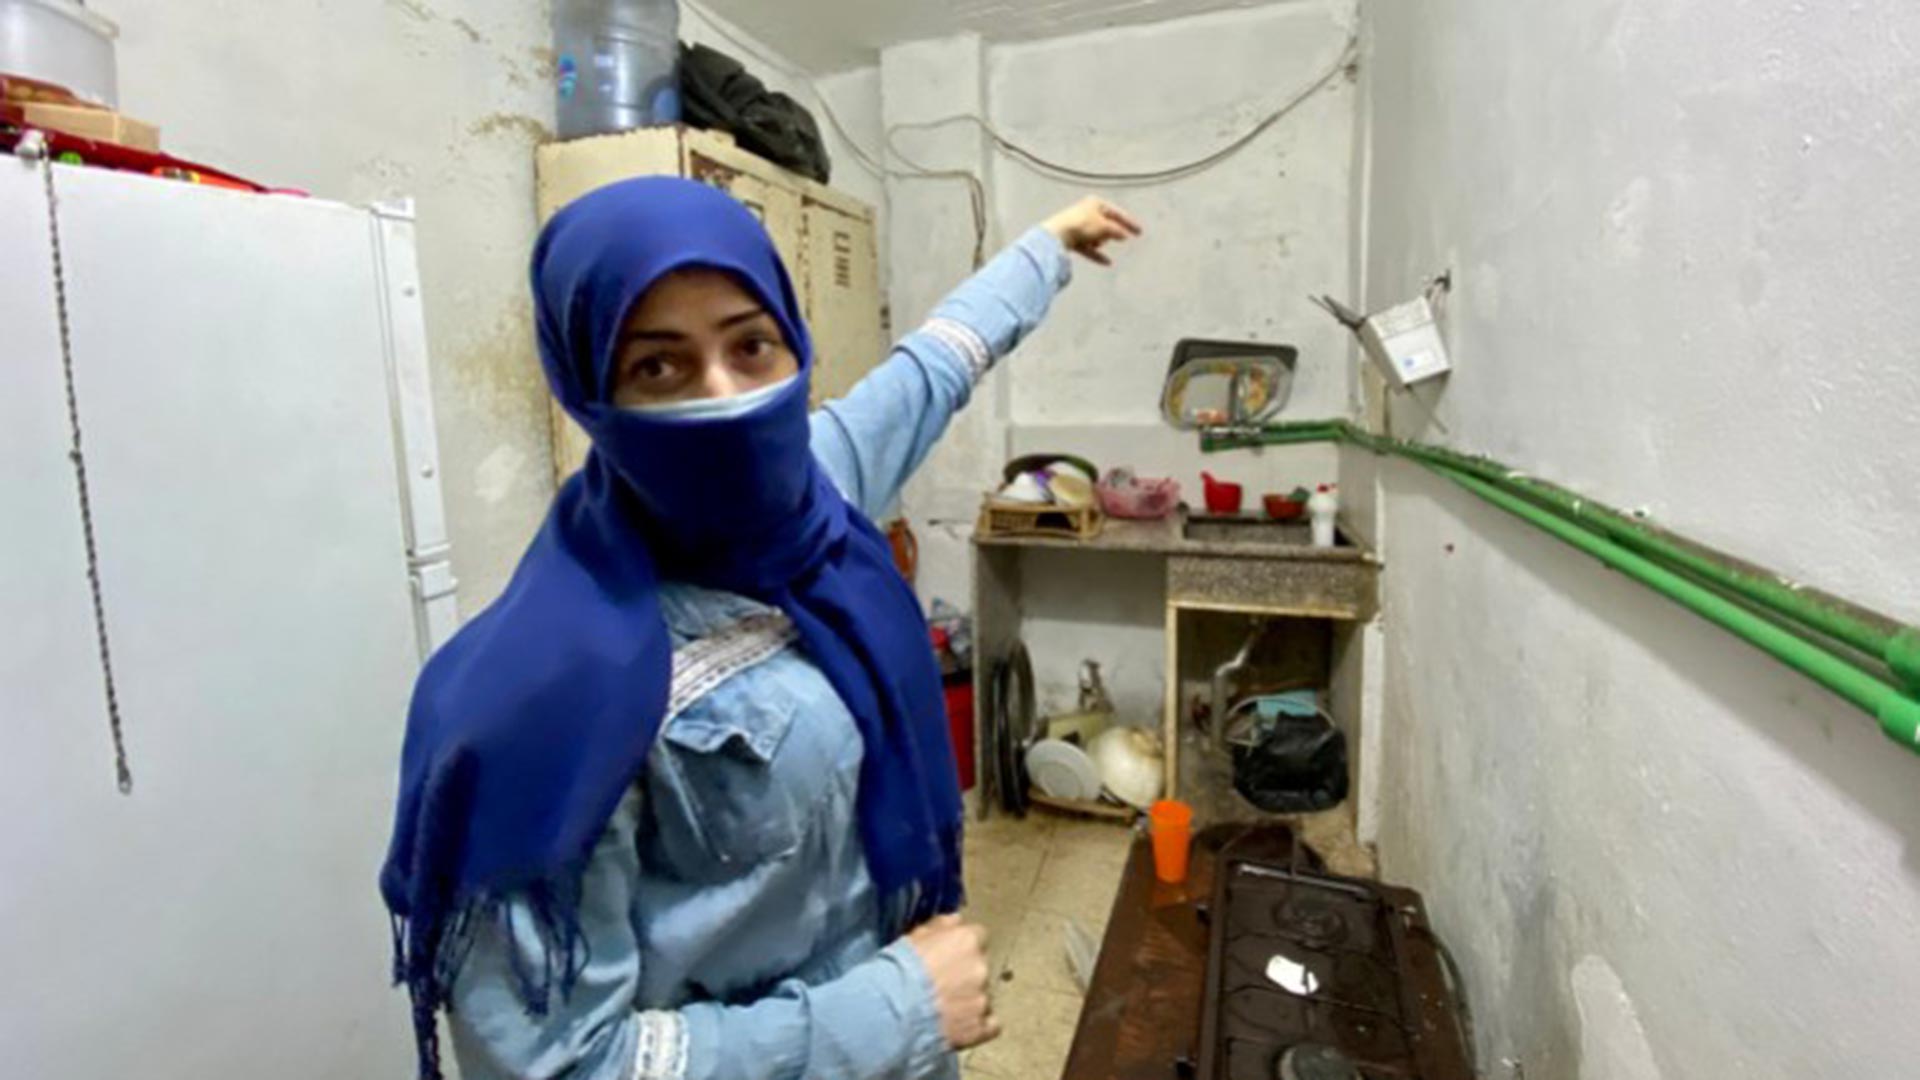 Walaa, una empleada estatal de Beirut muestra su modesta cocina y la falta de alimentos debido a la grave crisis económica que vive El Líbano. Kareem Chehayeb / Al Jazeera.